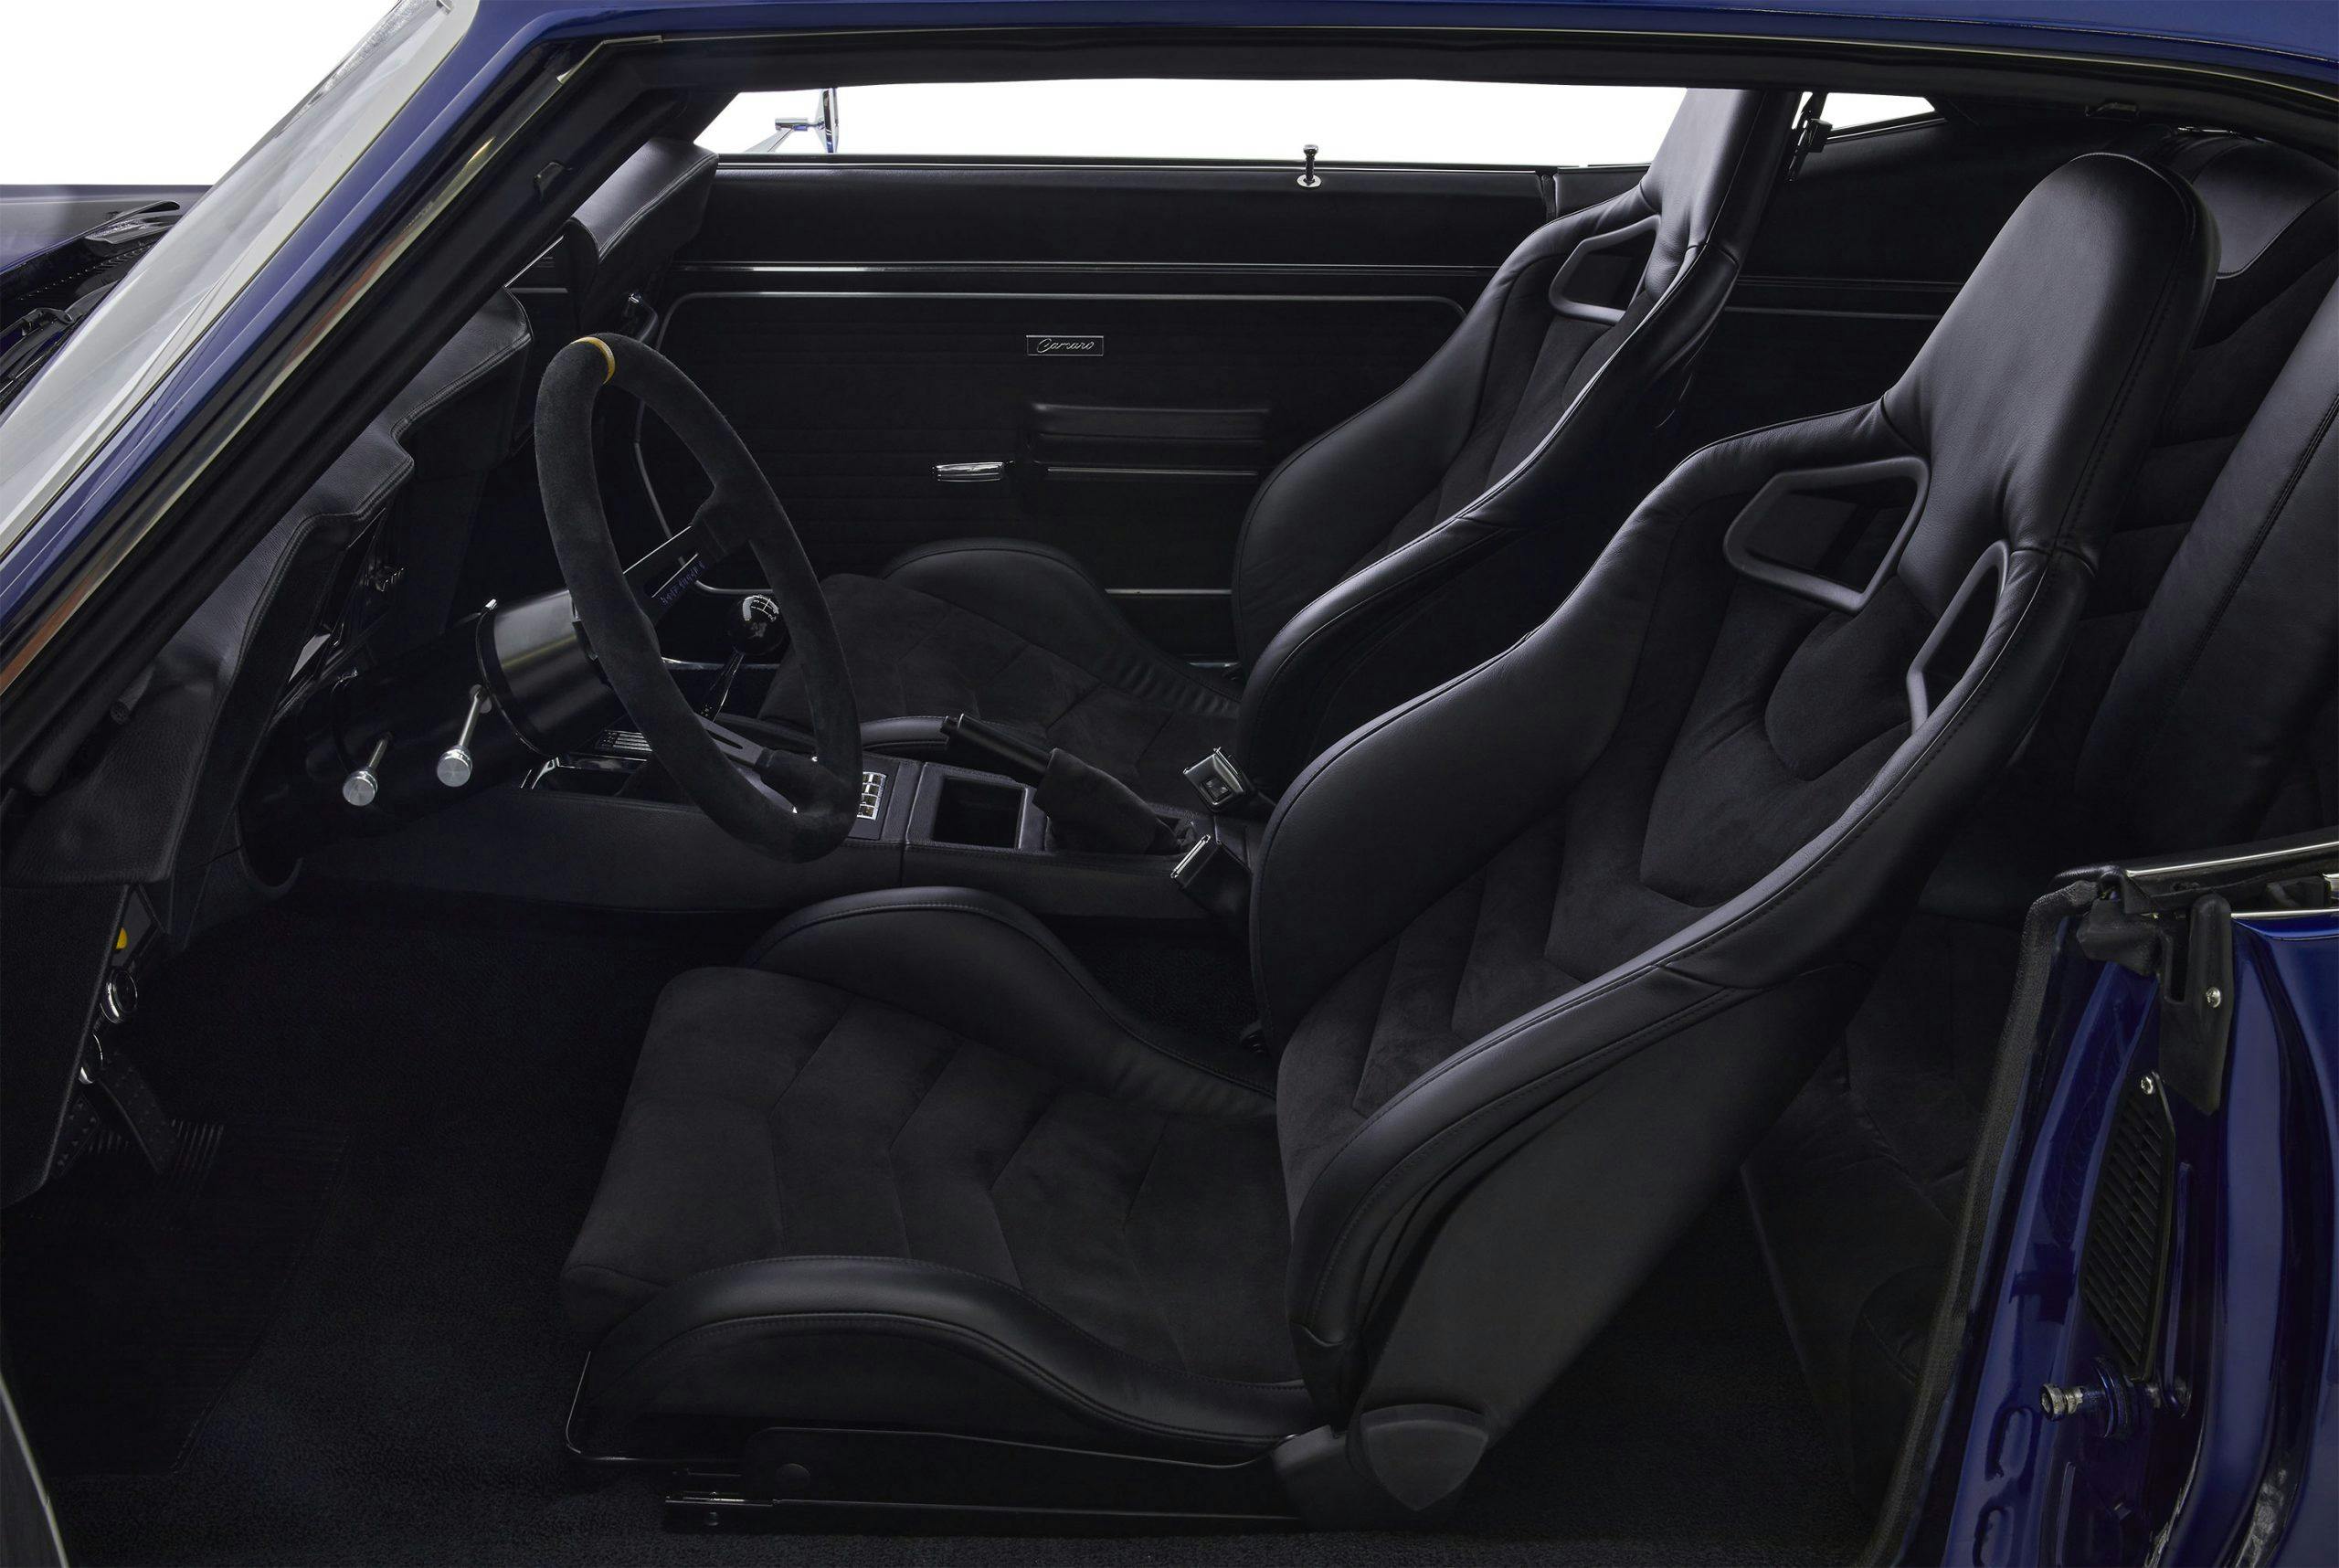 Kindred restomod Camaro LT interior seats